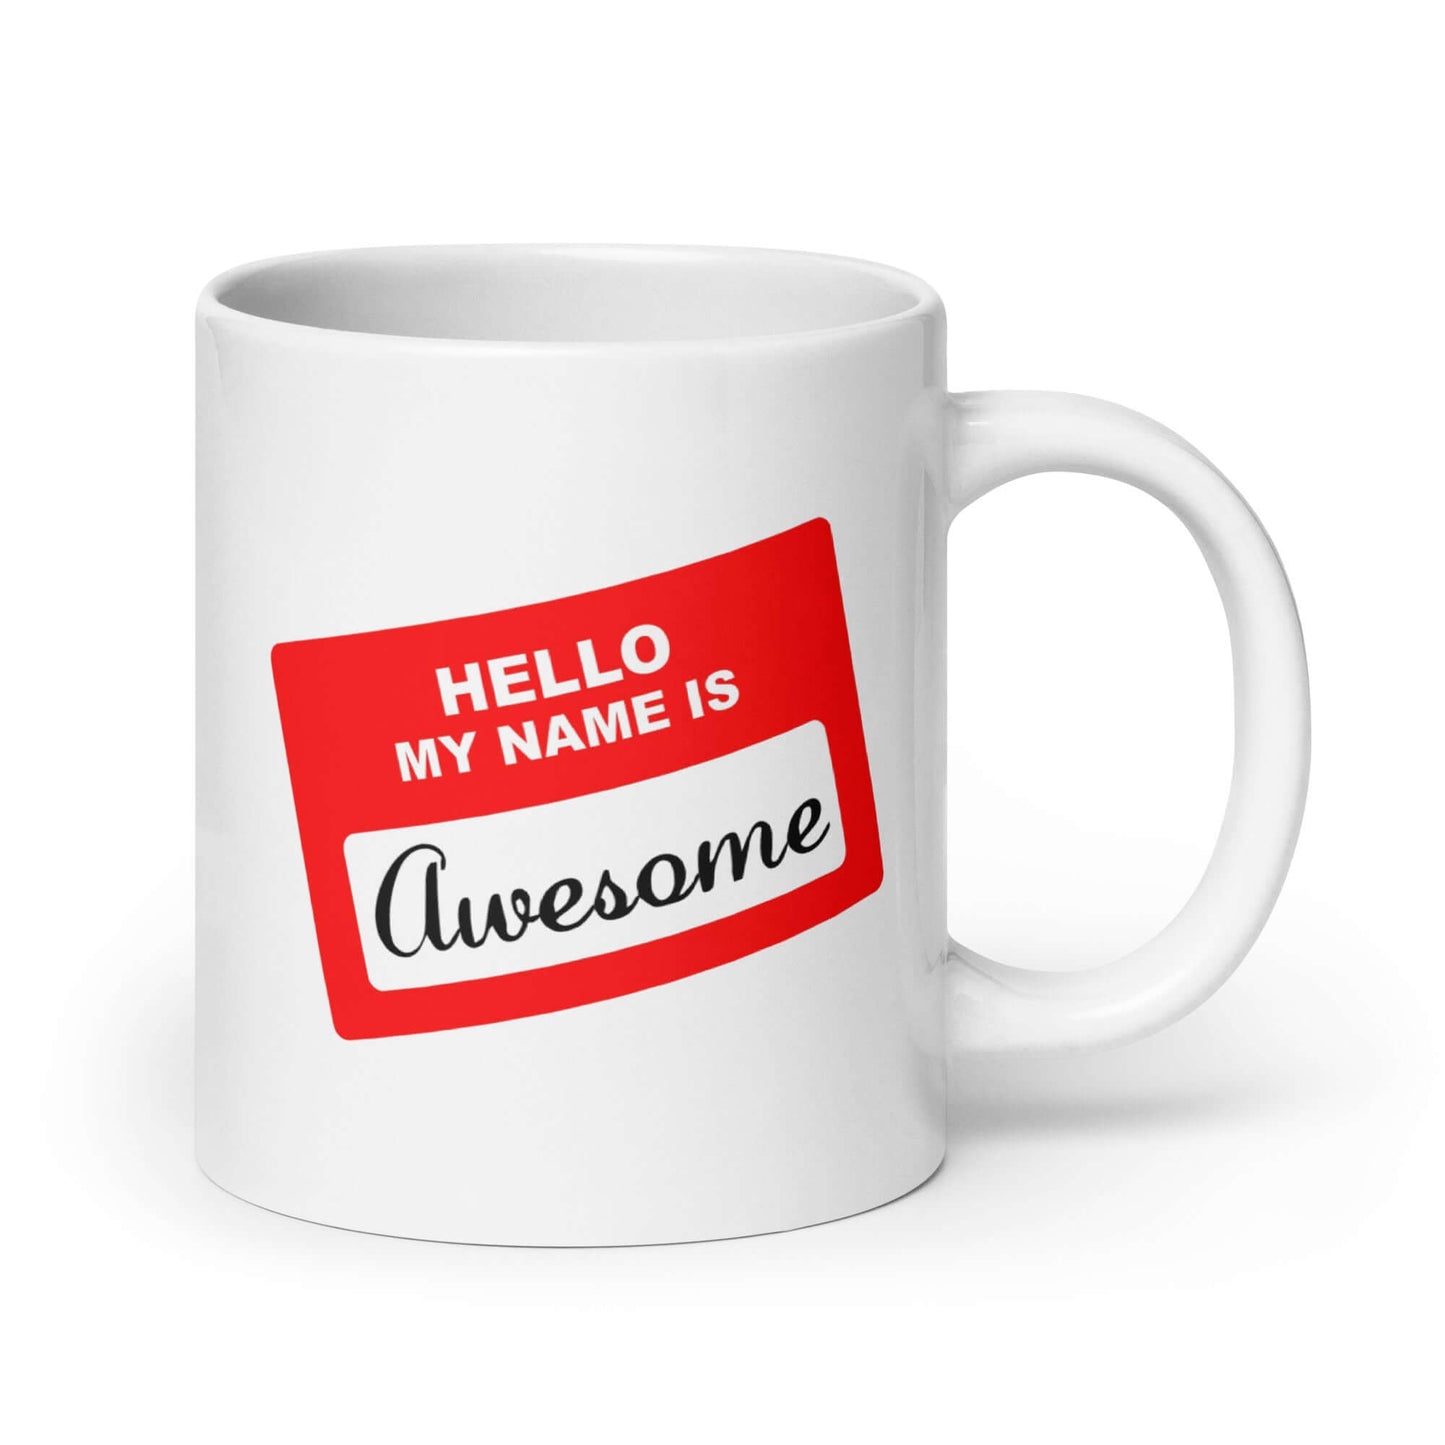 Hello, my name is awesome funny name tag mug